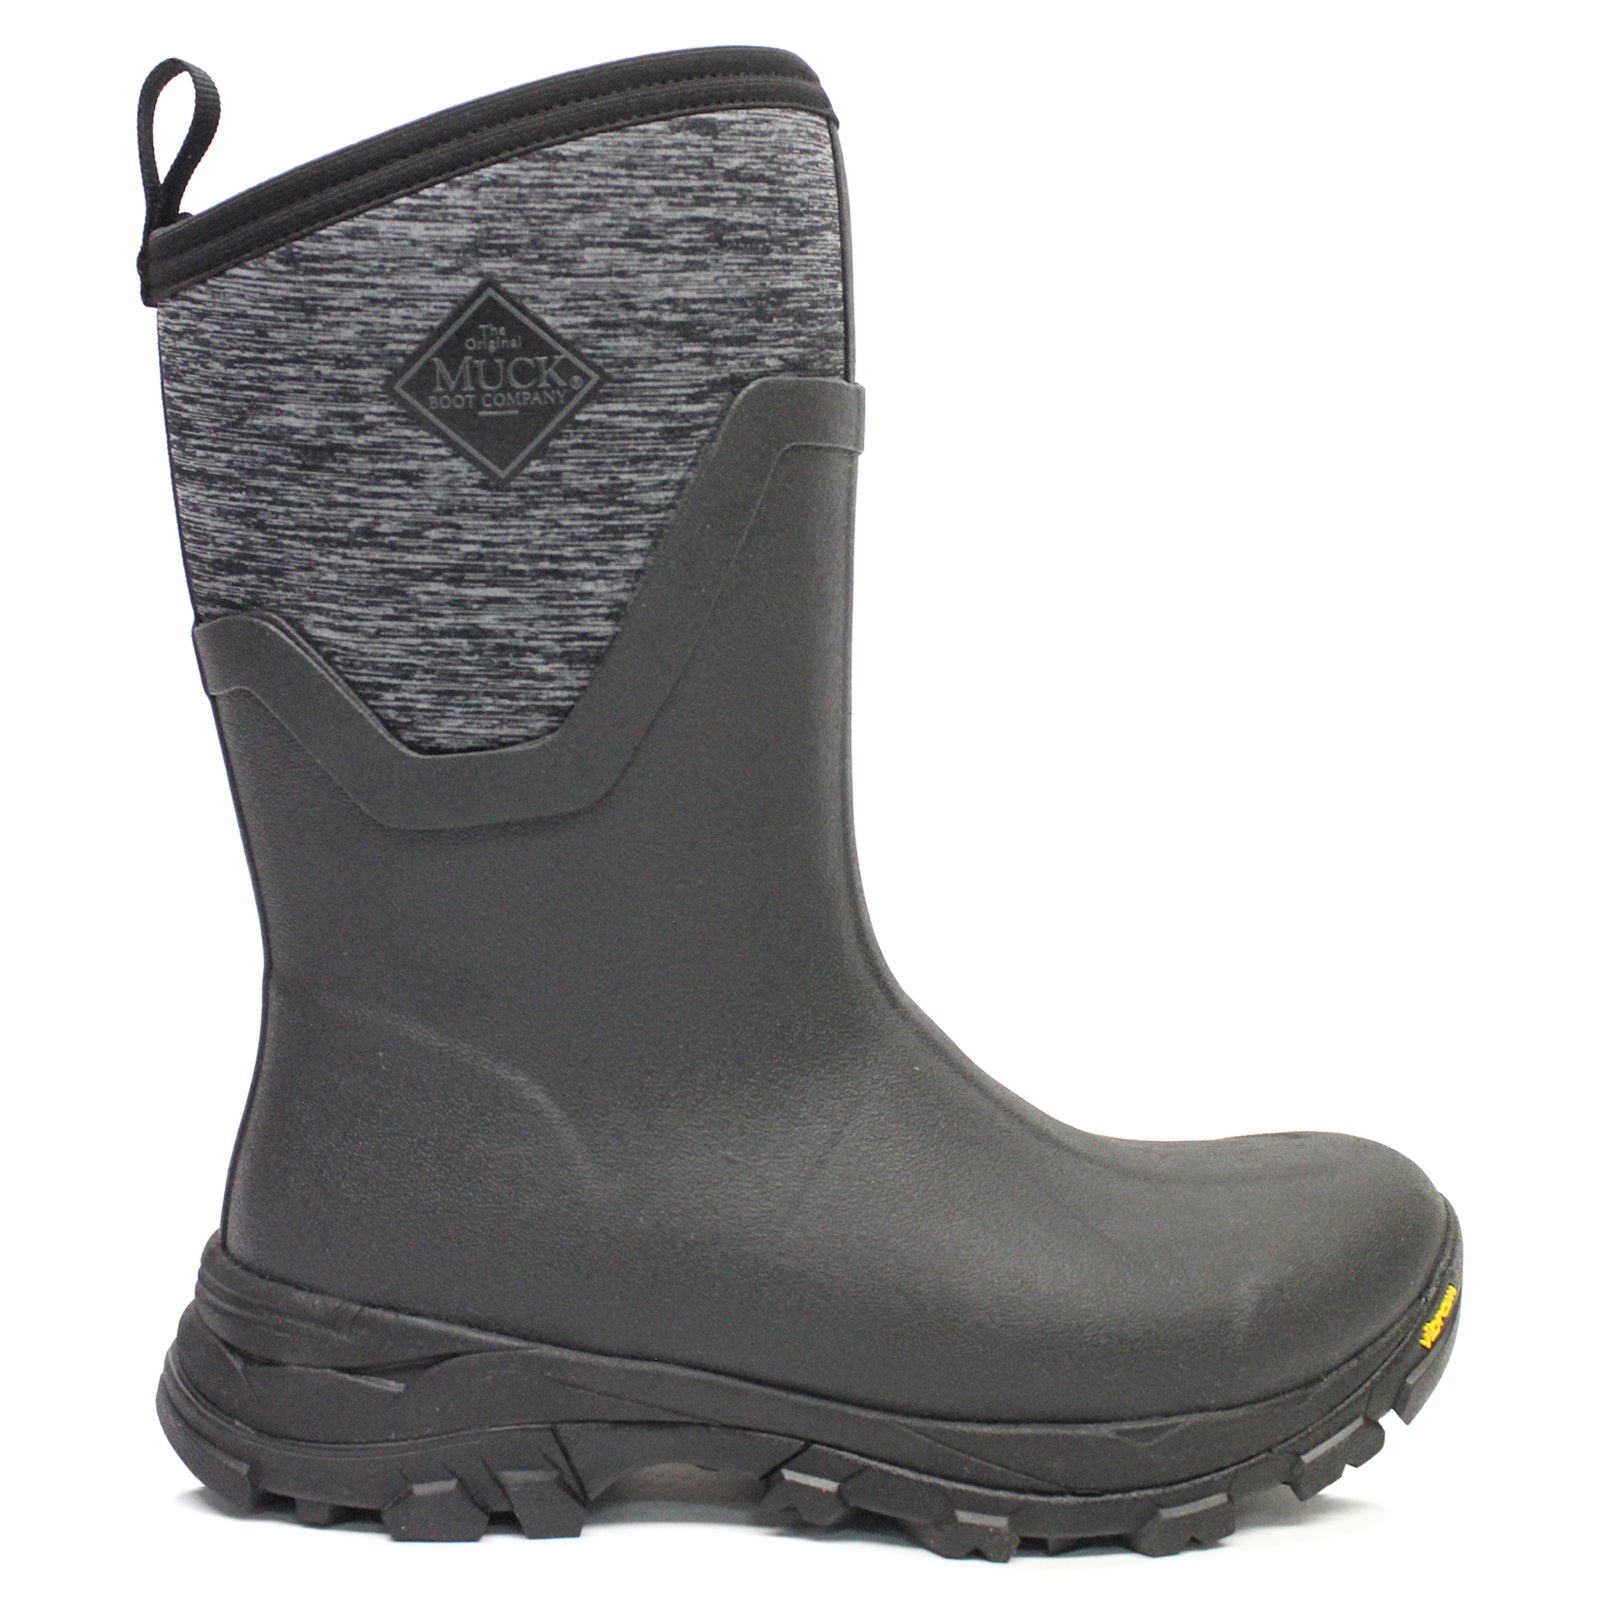 Muck Boot Arctic Ice Vibram Arctic Grip All Terrain Waterproof Women's Boots#color_black heather jersey